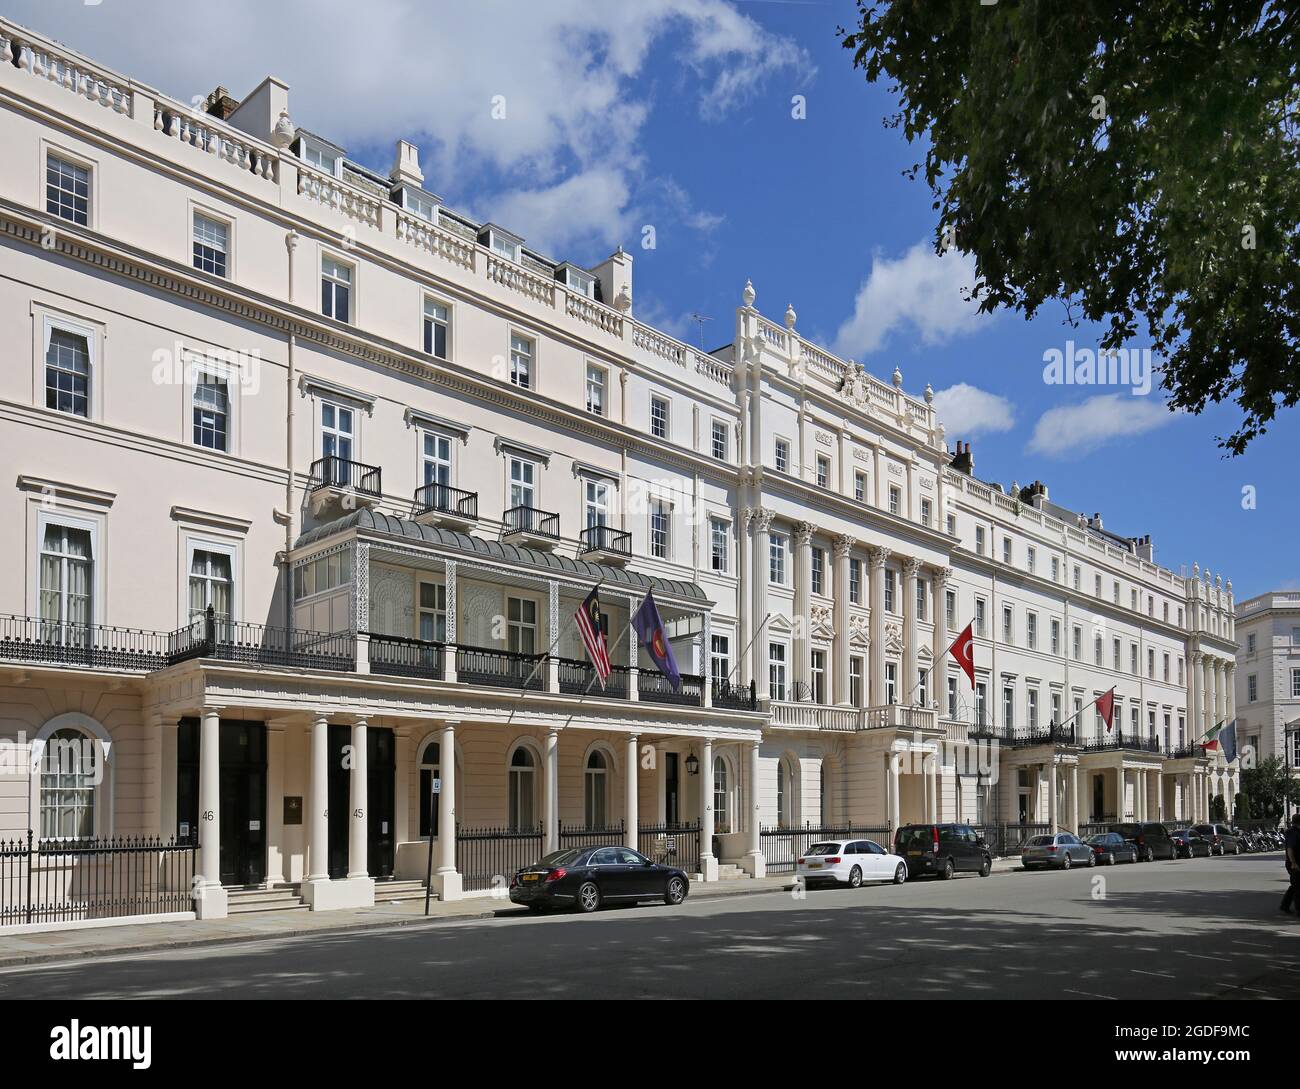 Ostseite des Belgrave Square, Westminster, London, Großbritannien. Zeigt die malaysische hohe Kommission (Mitte links), die türkische Botschaft (rechts). Stockfoto